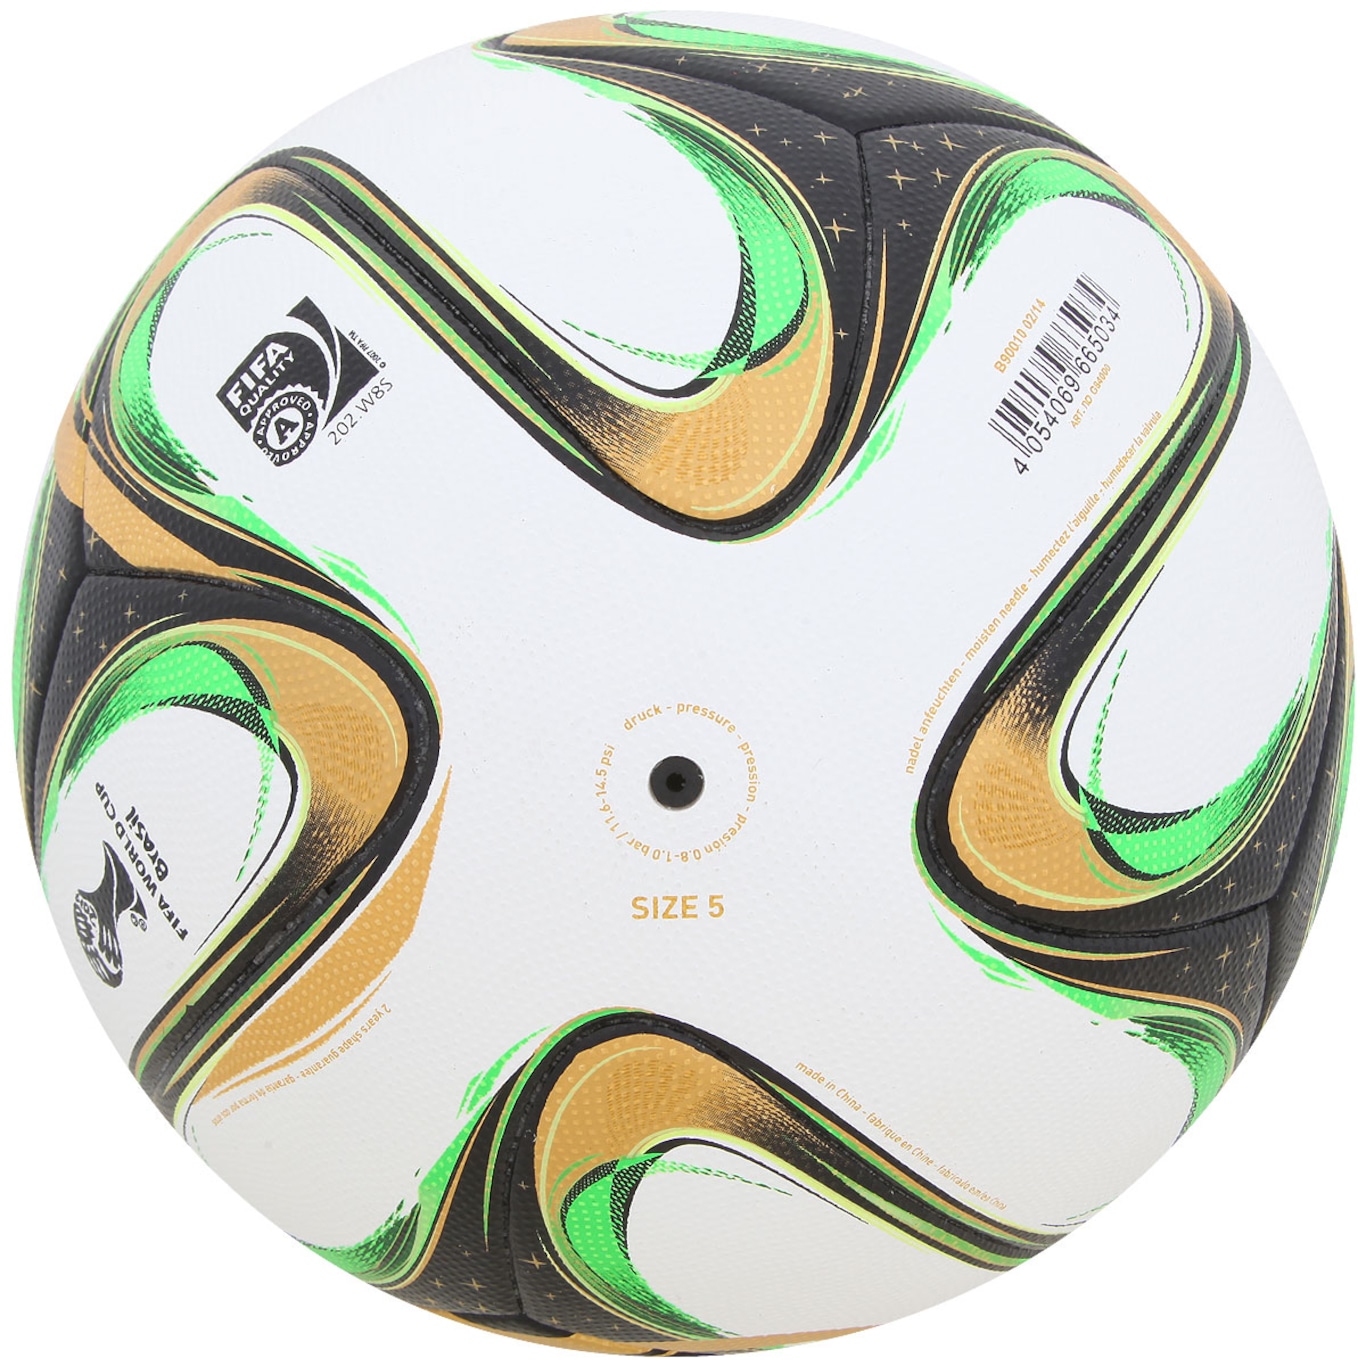 Copa do mundo FIFA 2014 Adidas Brazuca Futebol, bola, branco